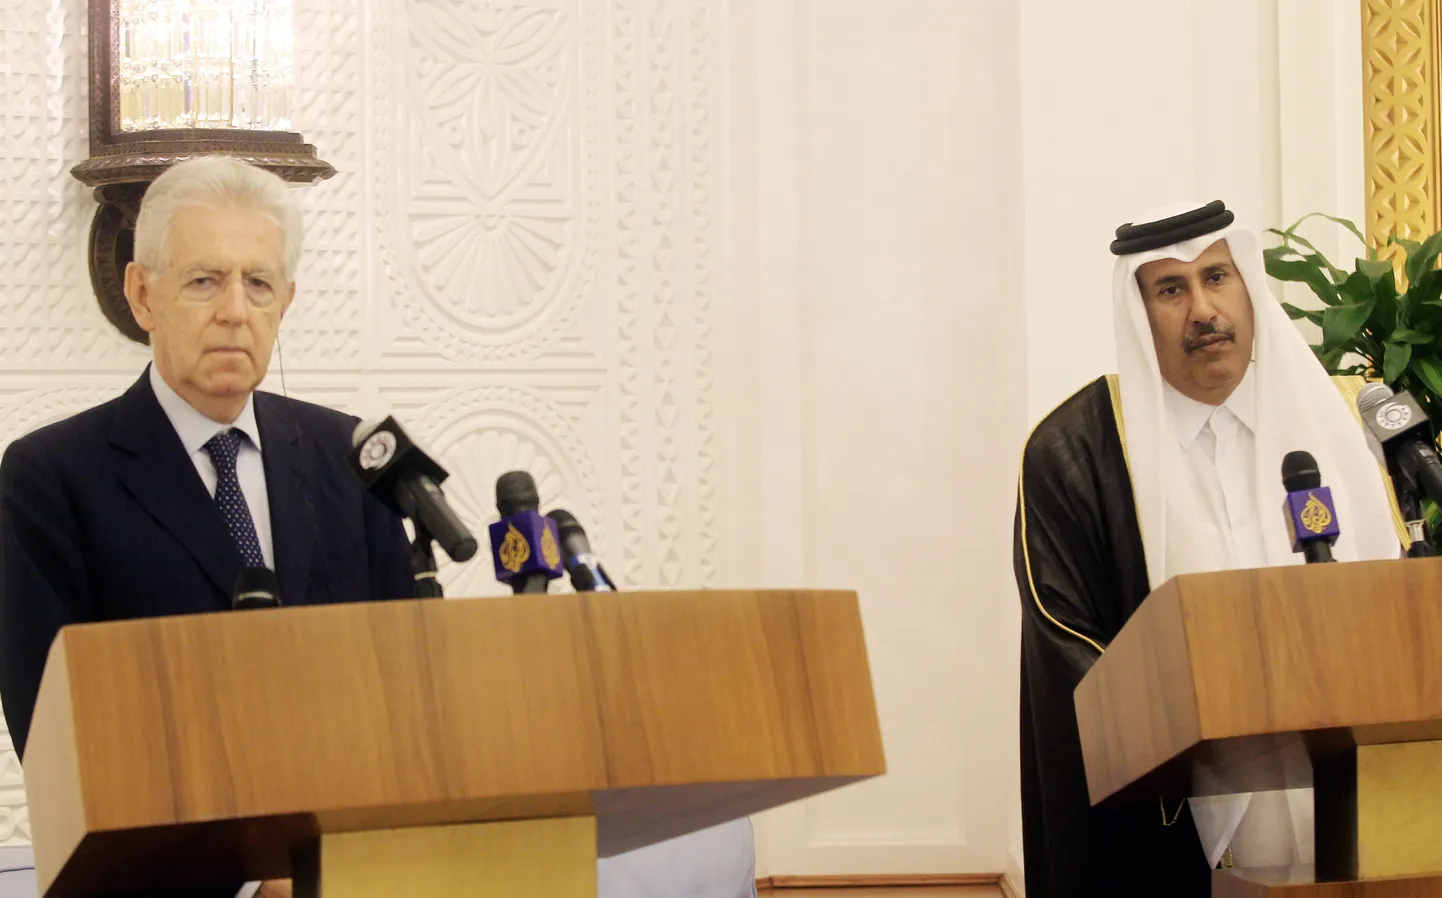 Itaalia peaminister Mario Monti (vasakul) tänasel kohtumisel Katari peaministri šeik Hamad bin Jassem bin Jabr al-Thaniga.